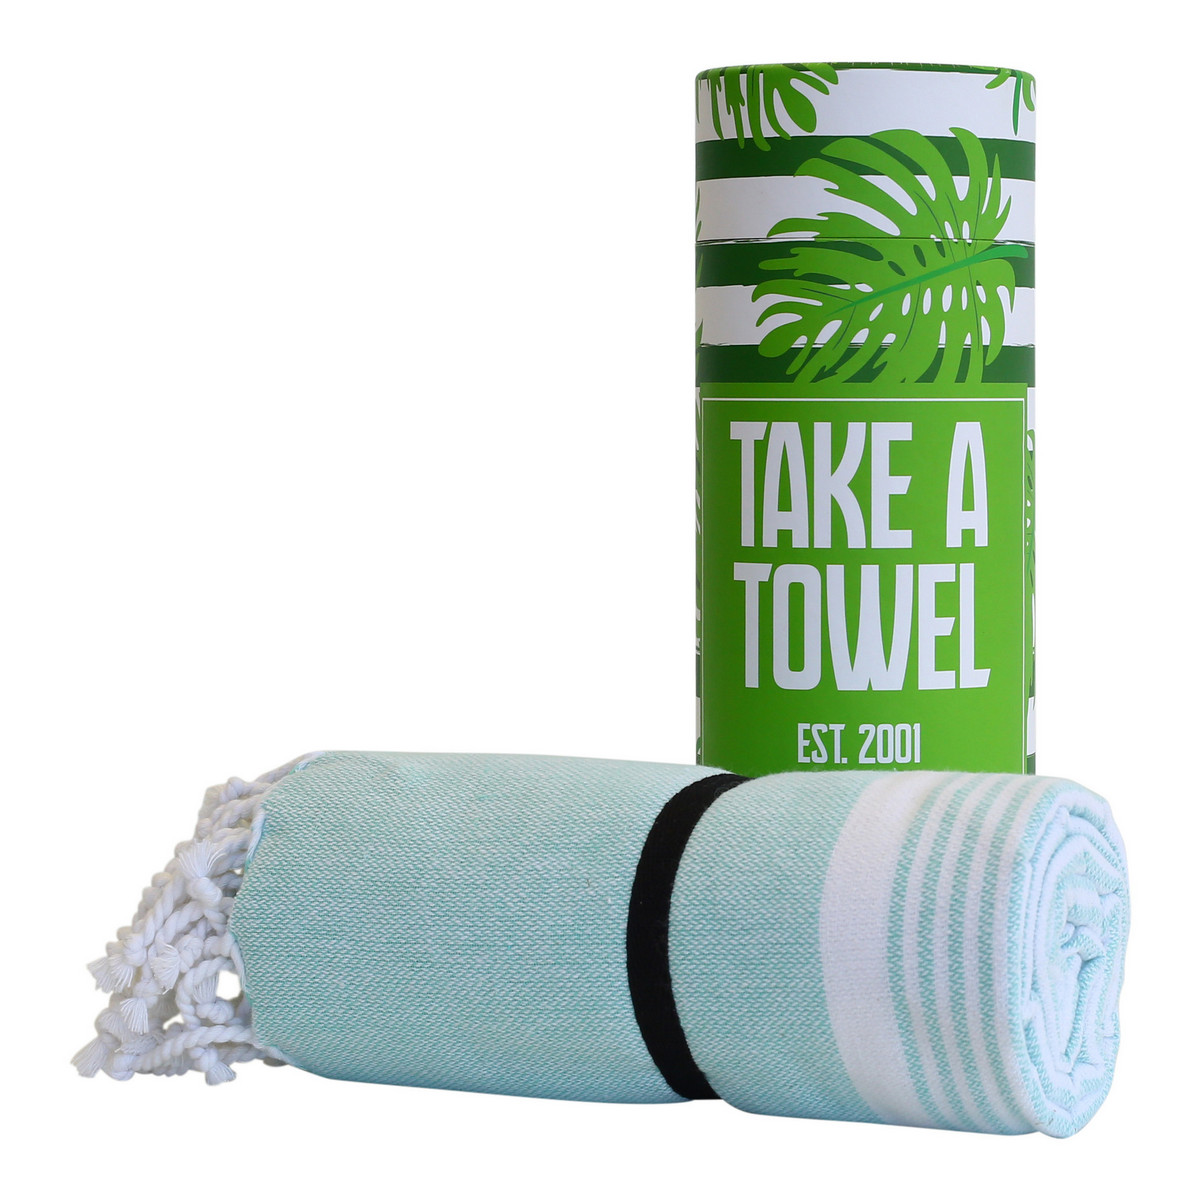 take a towel serviette spa hammam une idee cadeau chez ugo et lea  (4)